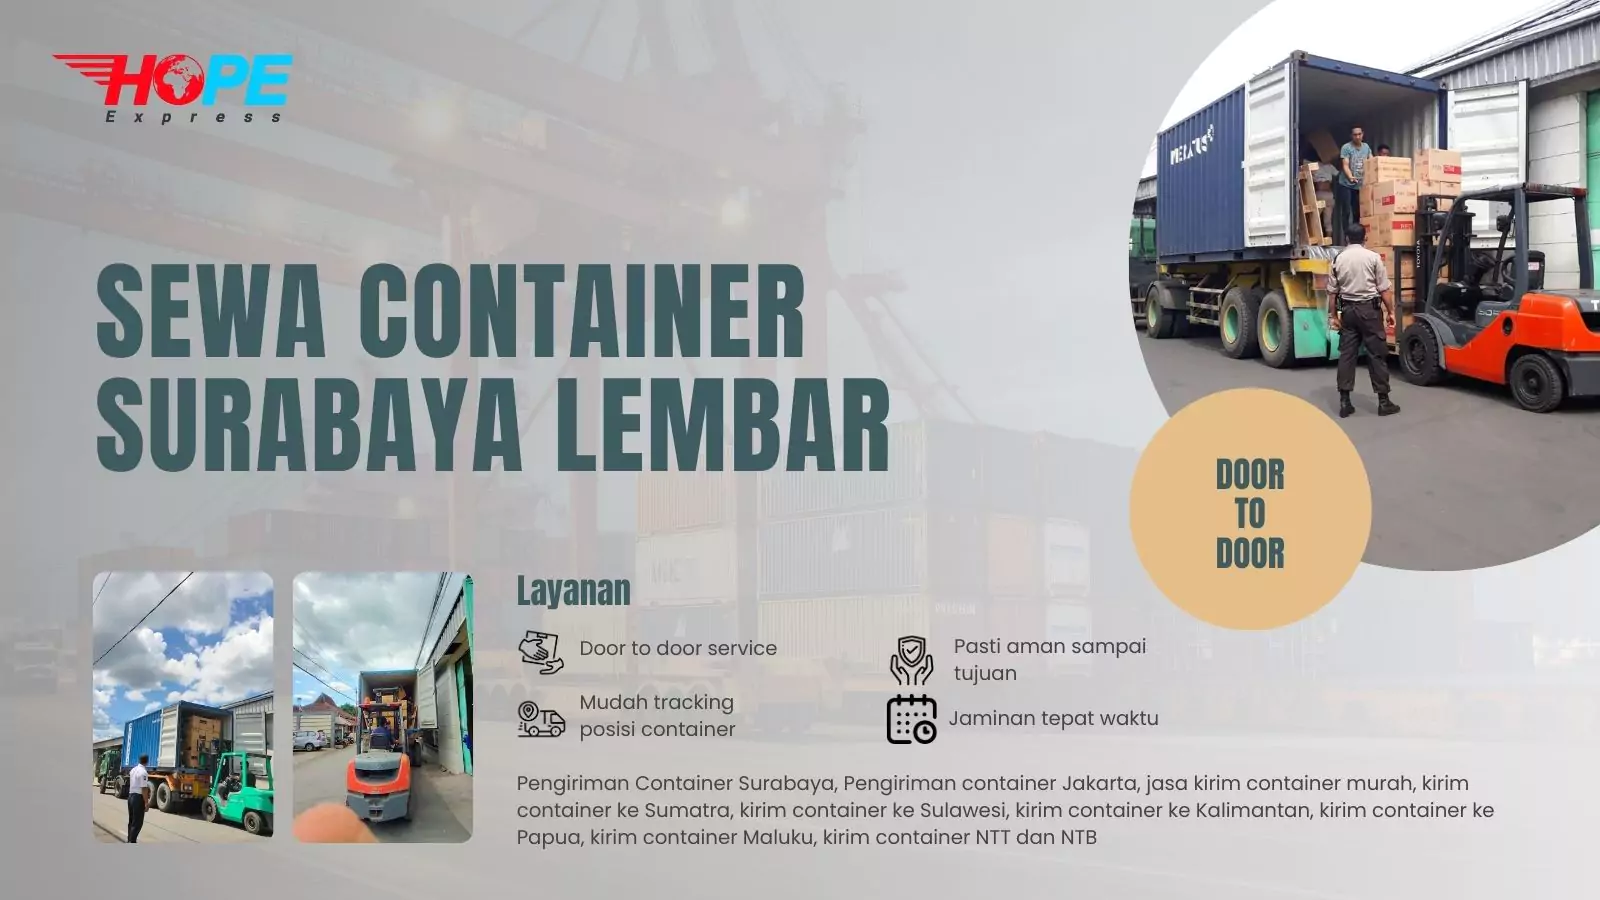 Sewa Container Surabaya Lembar